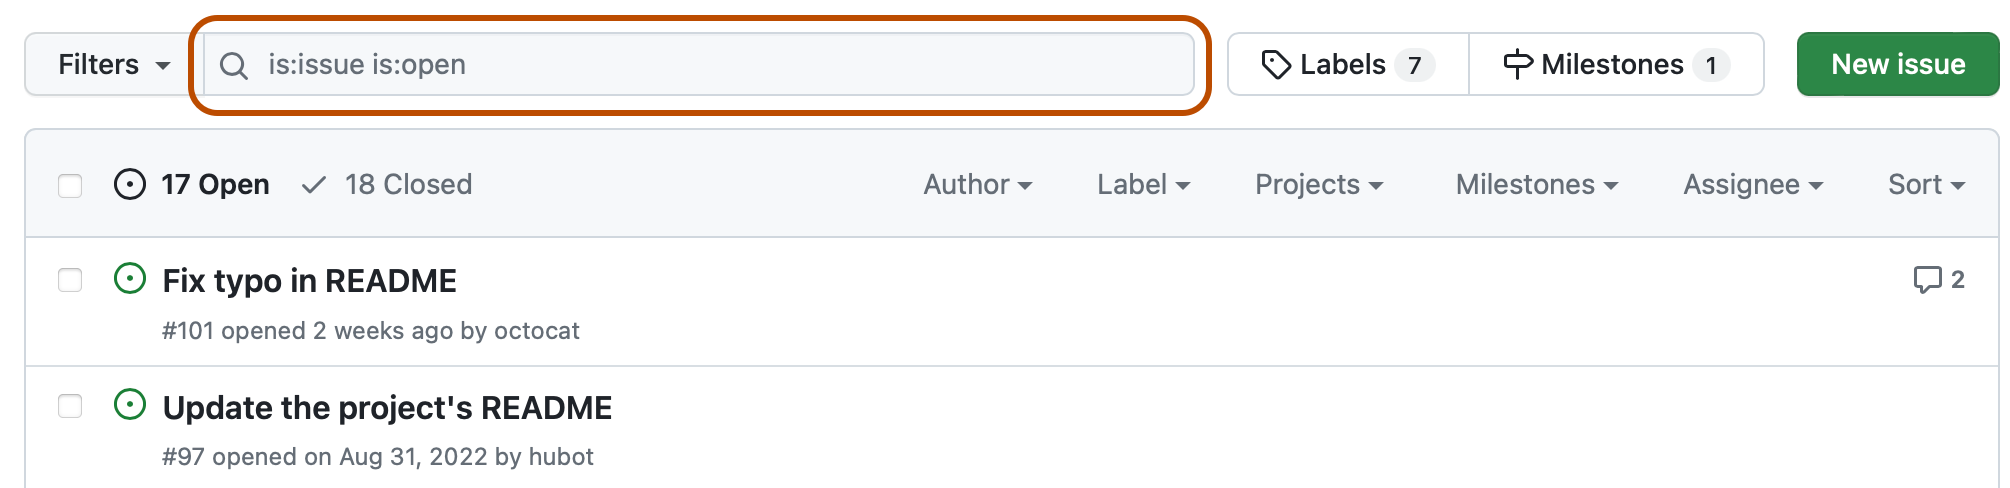 Captura de tela da lista de problemas de um repositório. Acima da lista, há um campo de pesquisa com a consulta "is:issue is:open" que tem o contorno em laranja escuro.